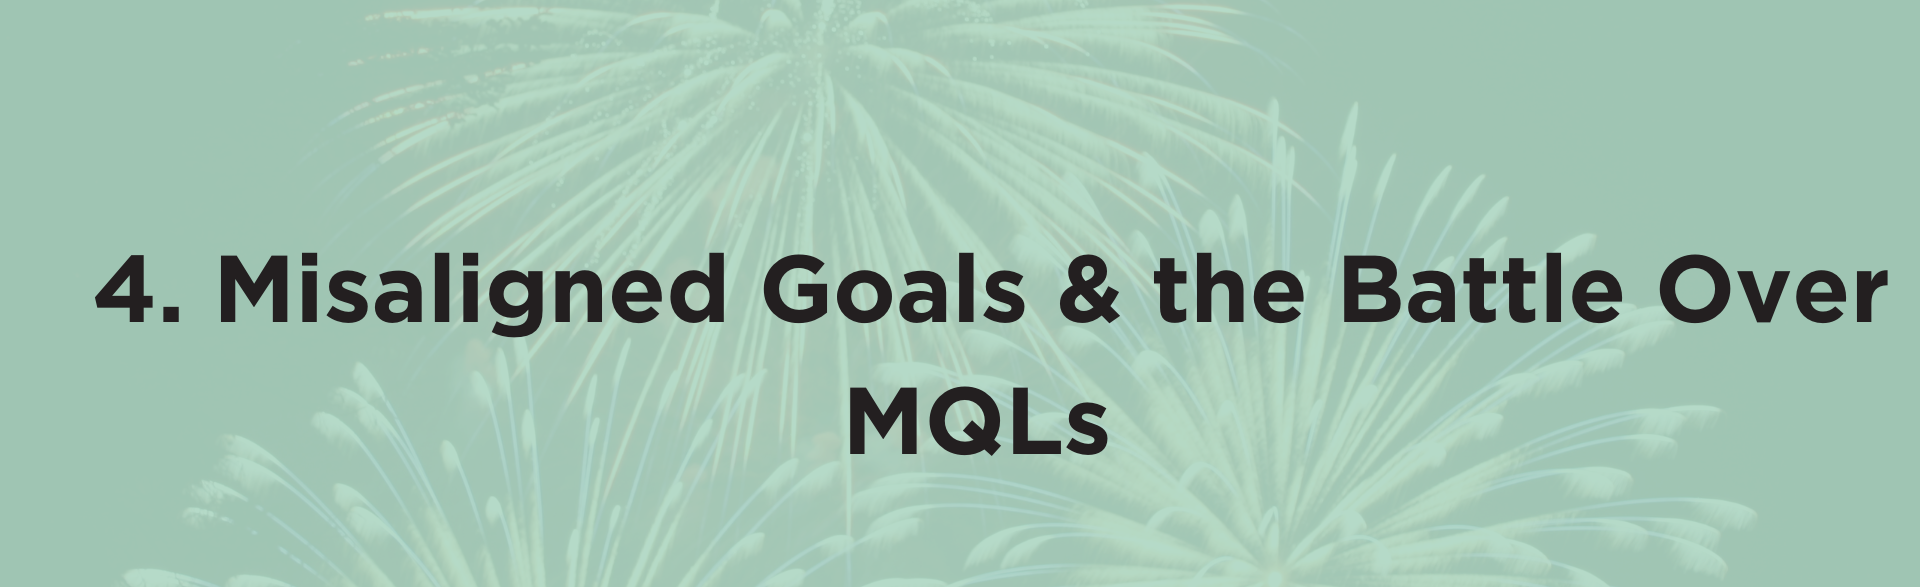 SM2C.4. Misaligned Goals & the Battle Over MQLs